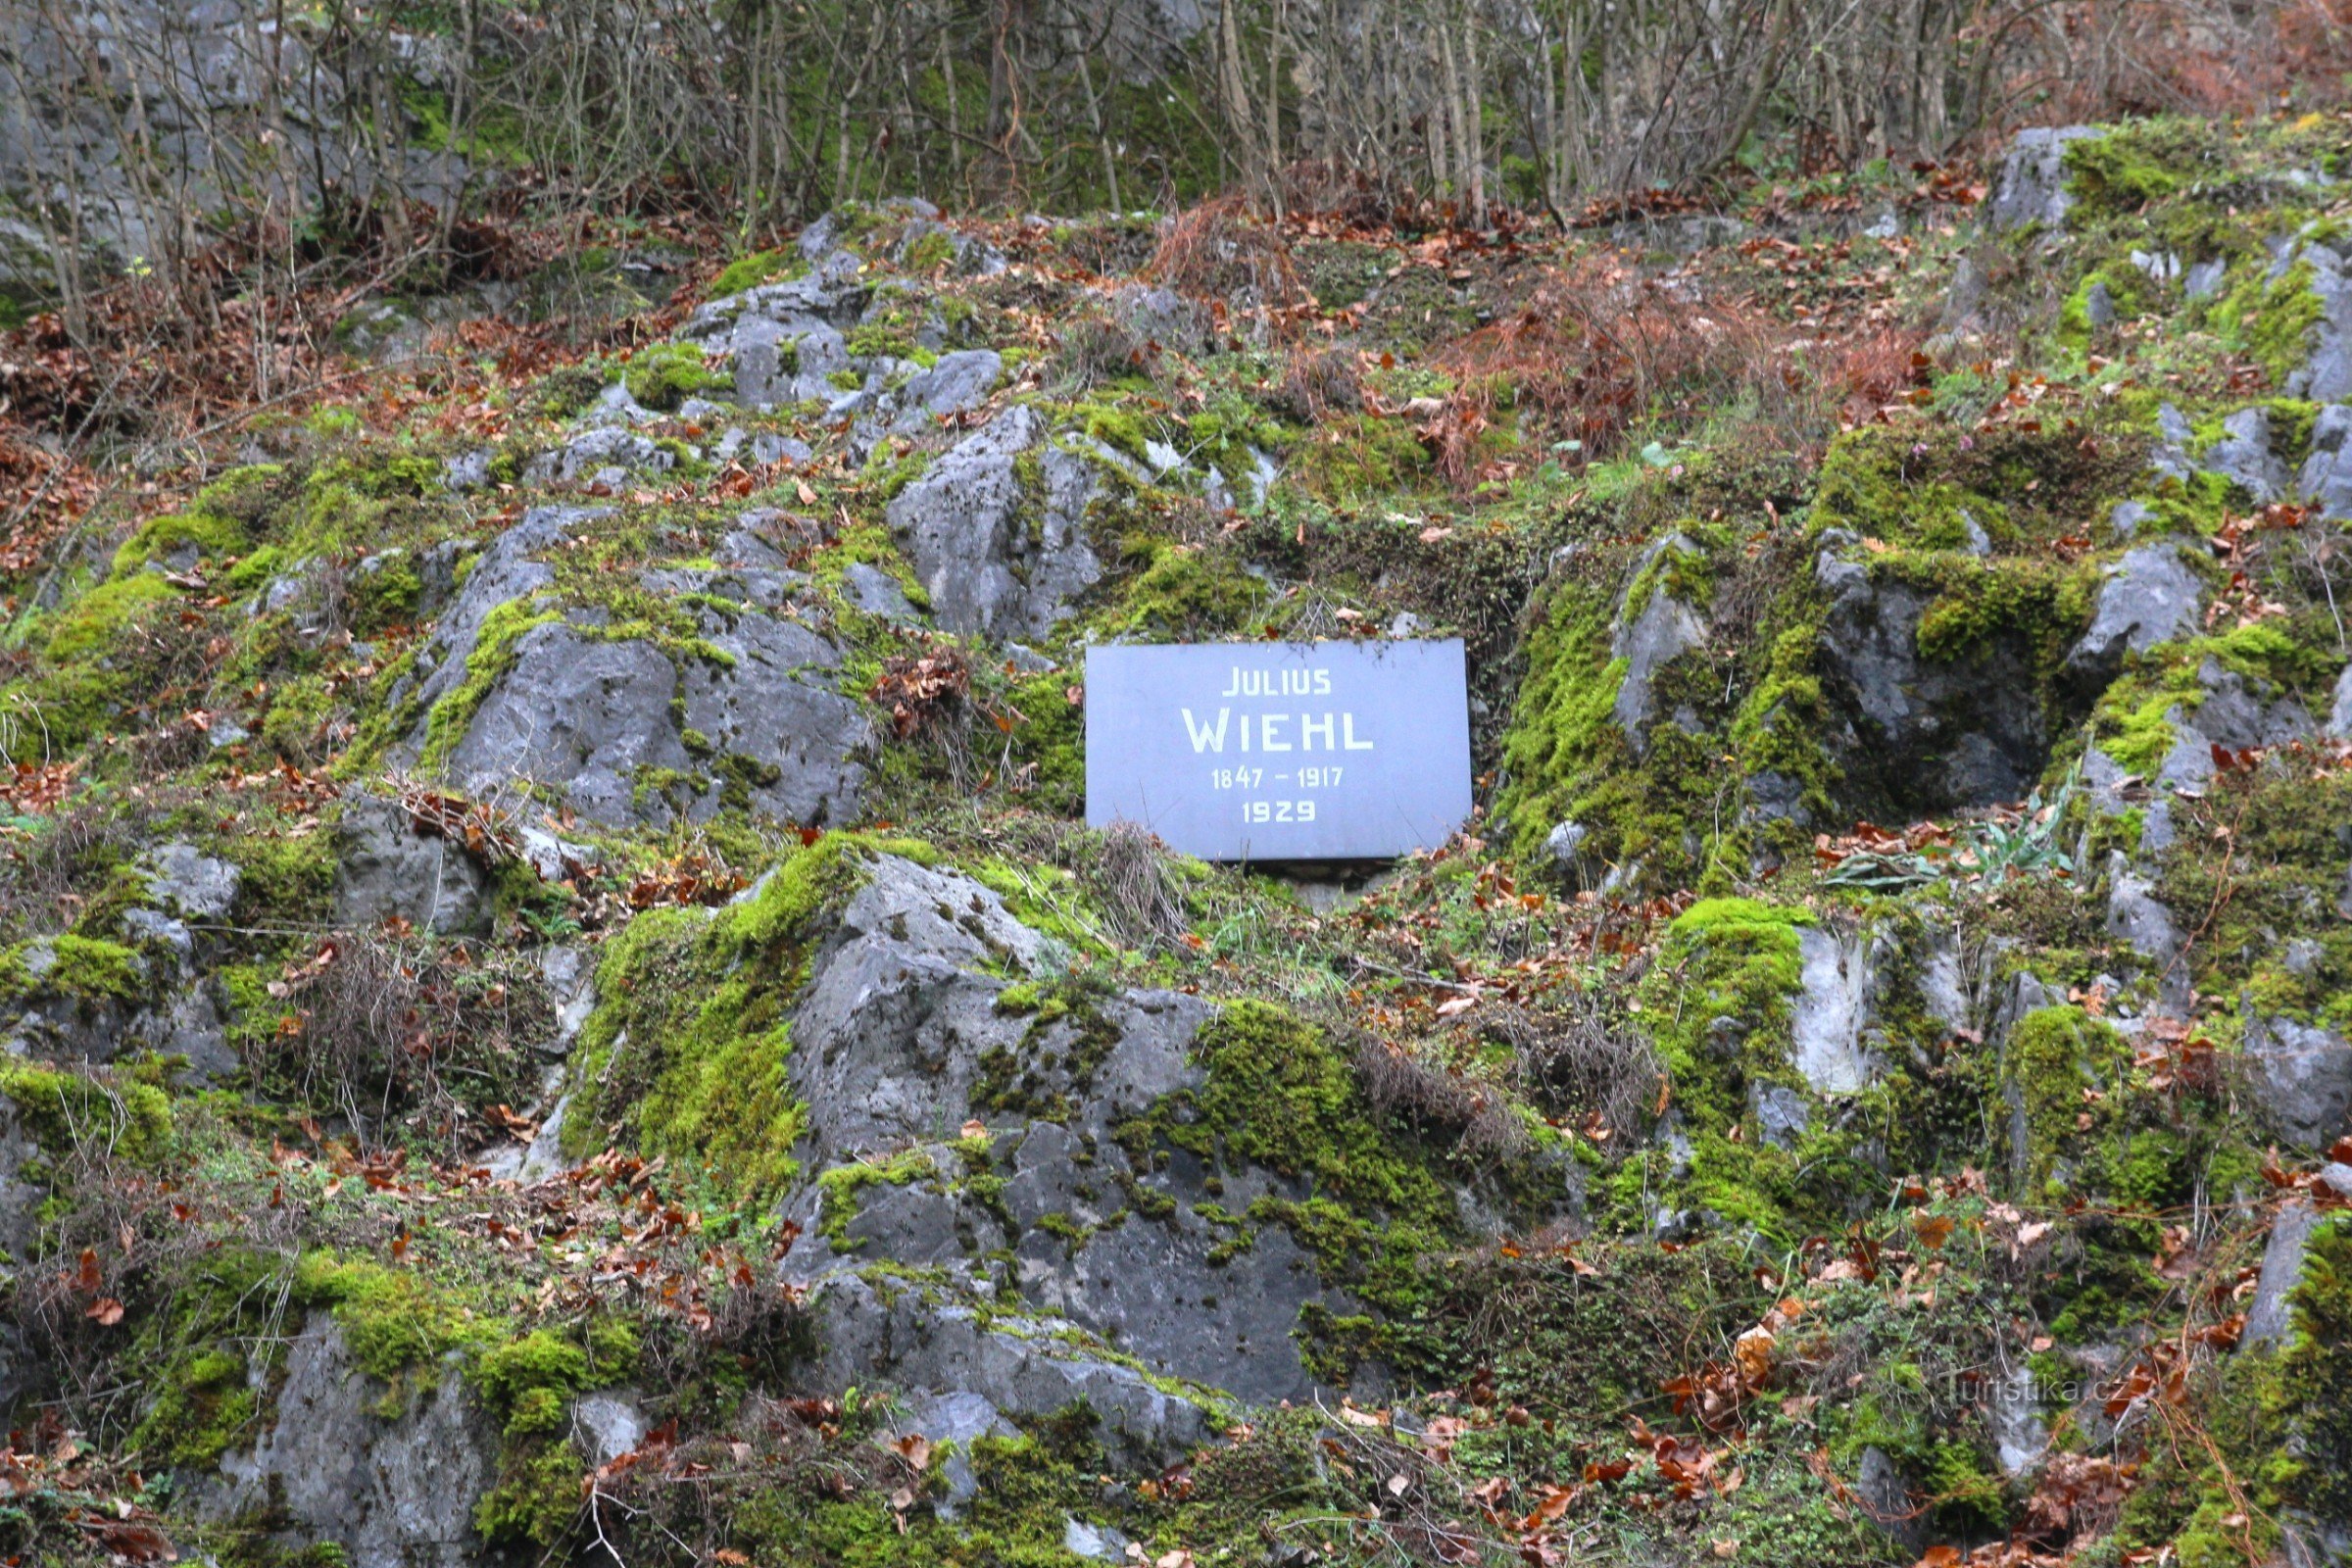 Мемориальная доска находится на каменистом склоне под старым крестьянским бревном.